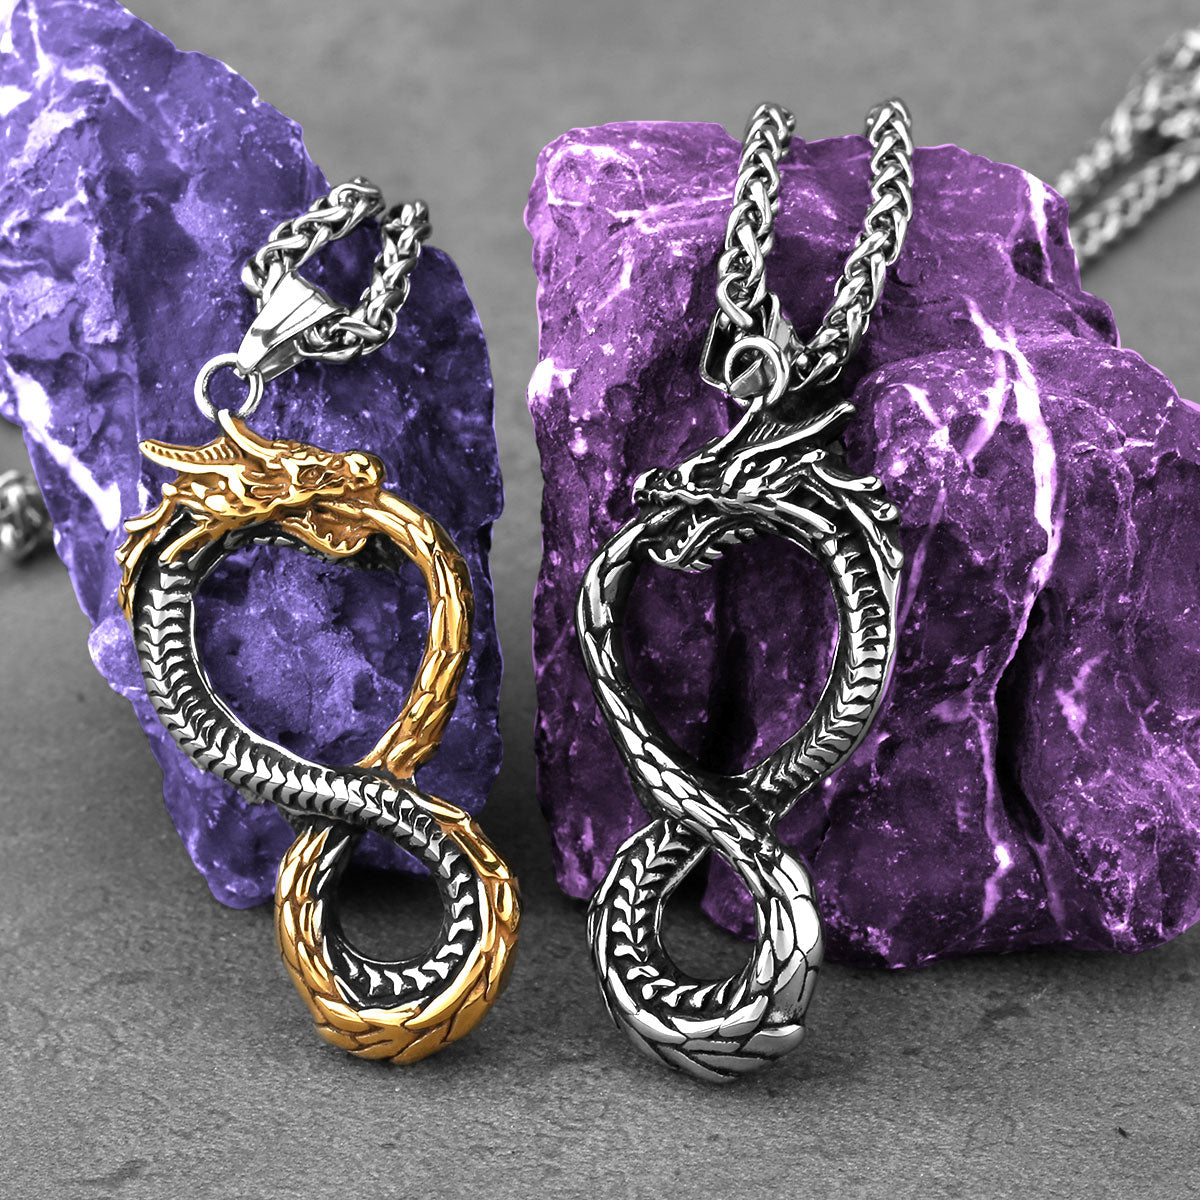 Unique Viking Dragon Necklace